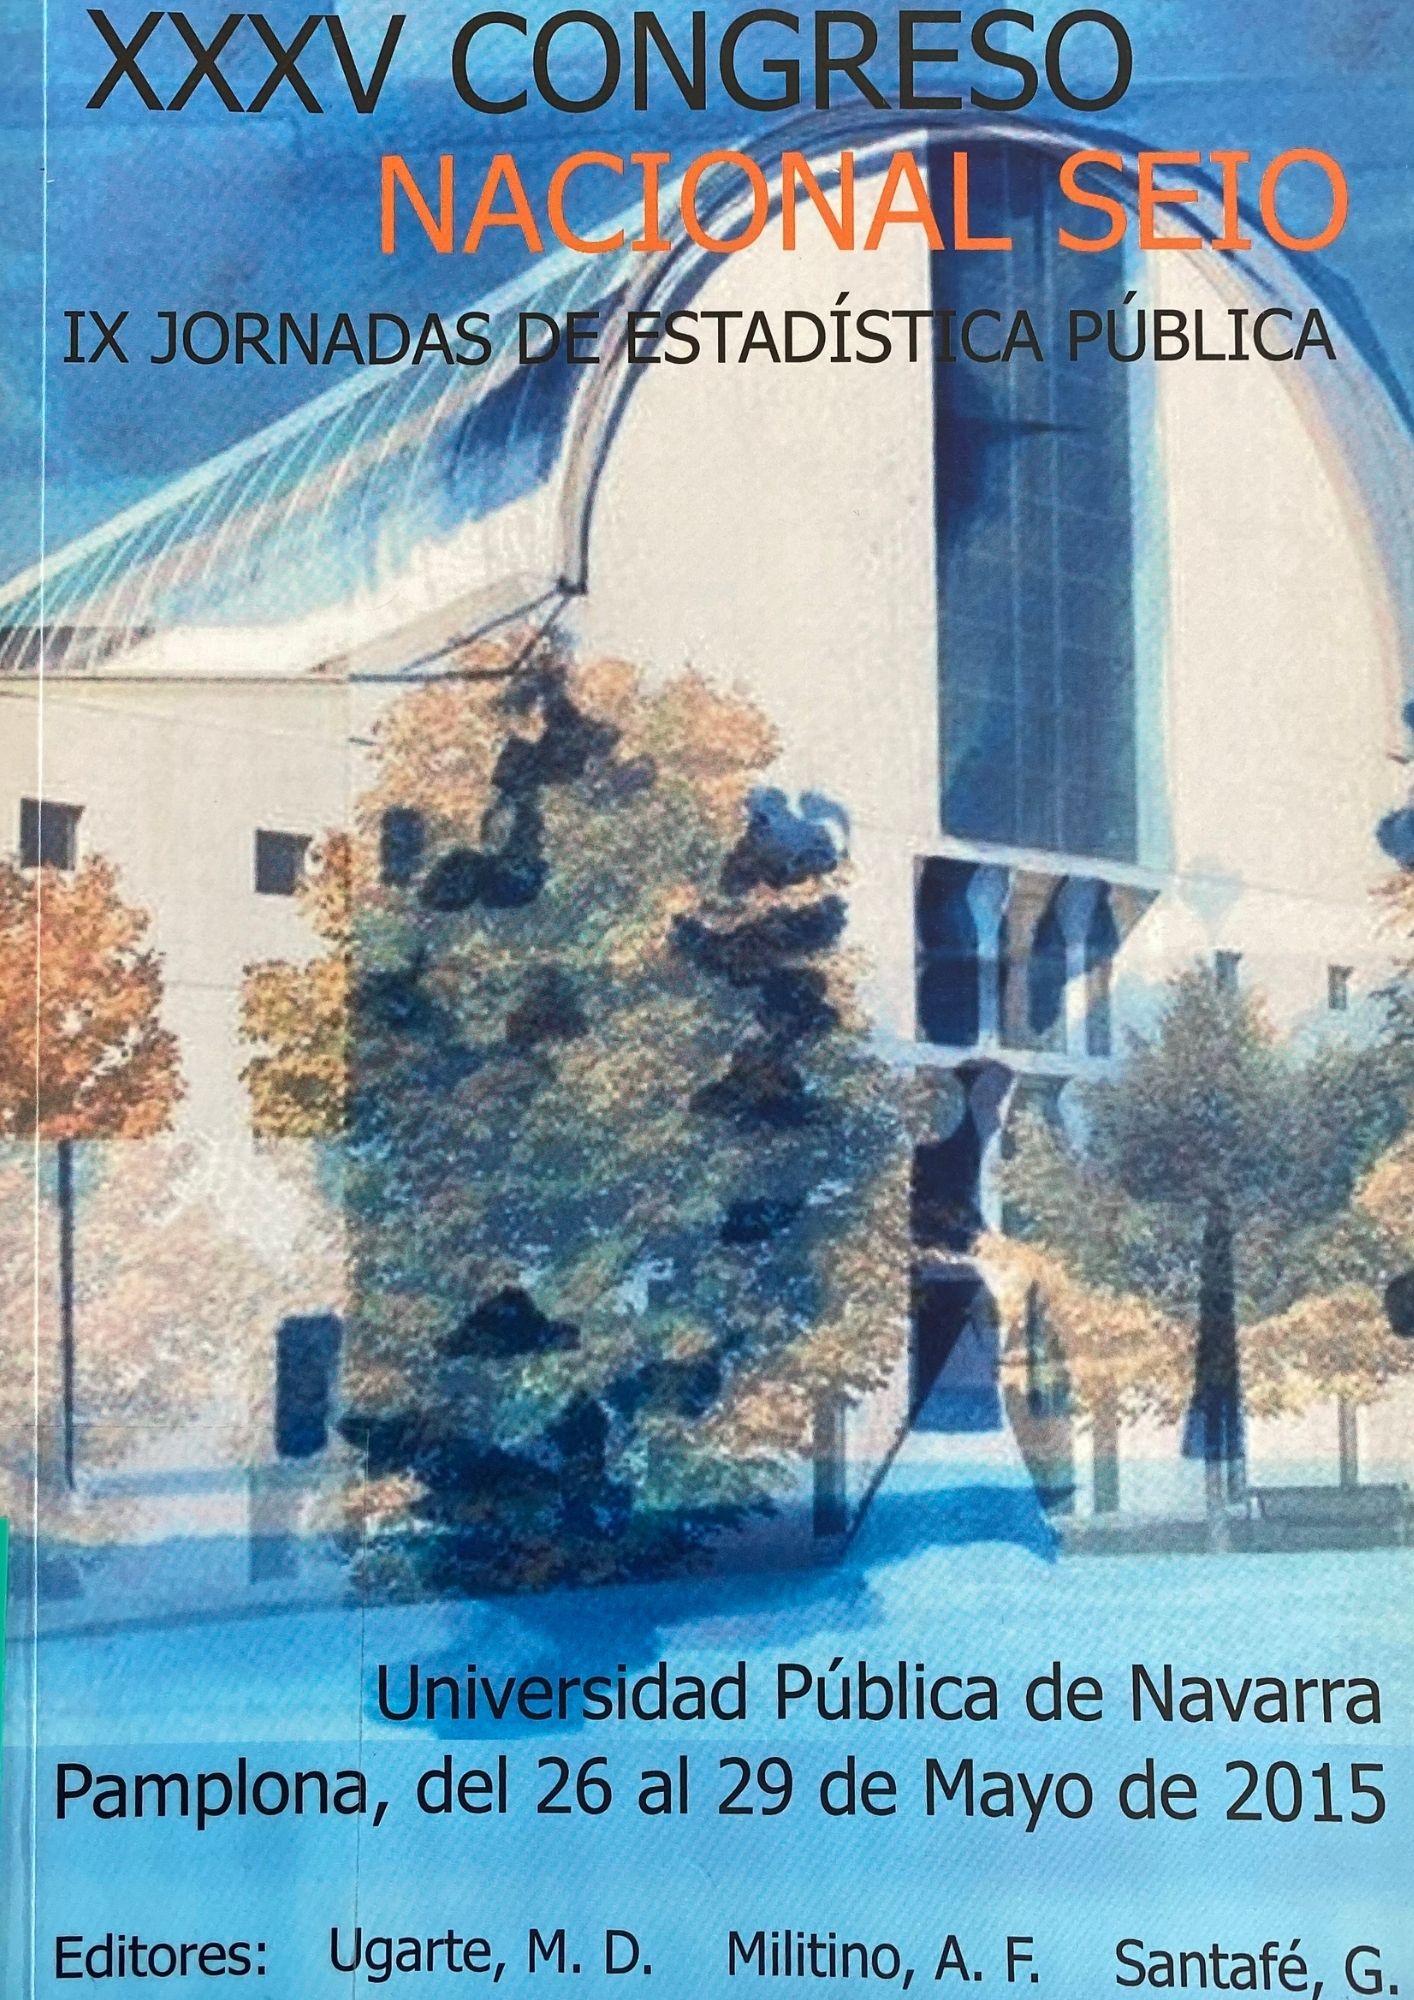 Imagen de portada del libro XXXV Congreso Nacional SEIO